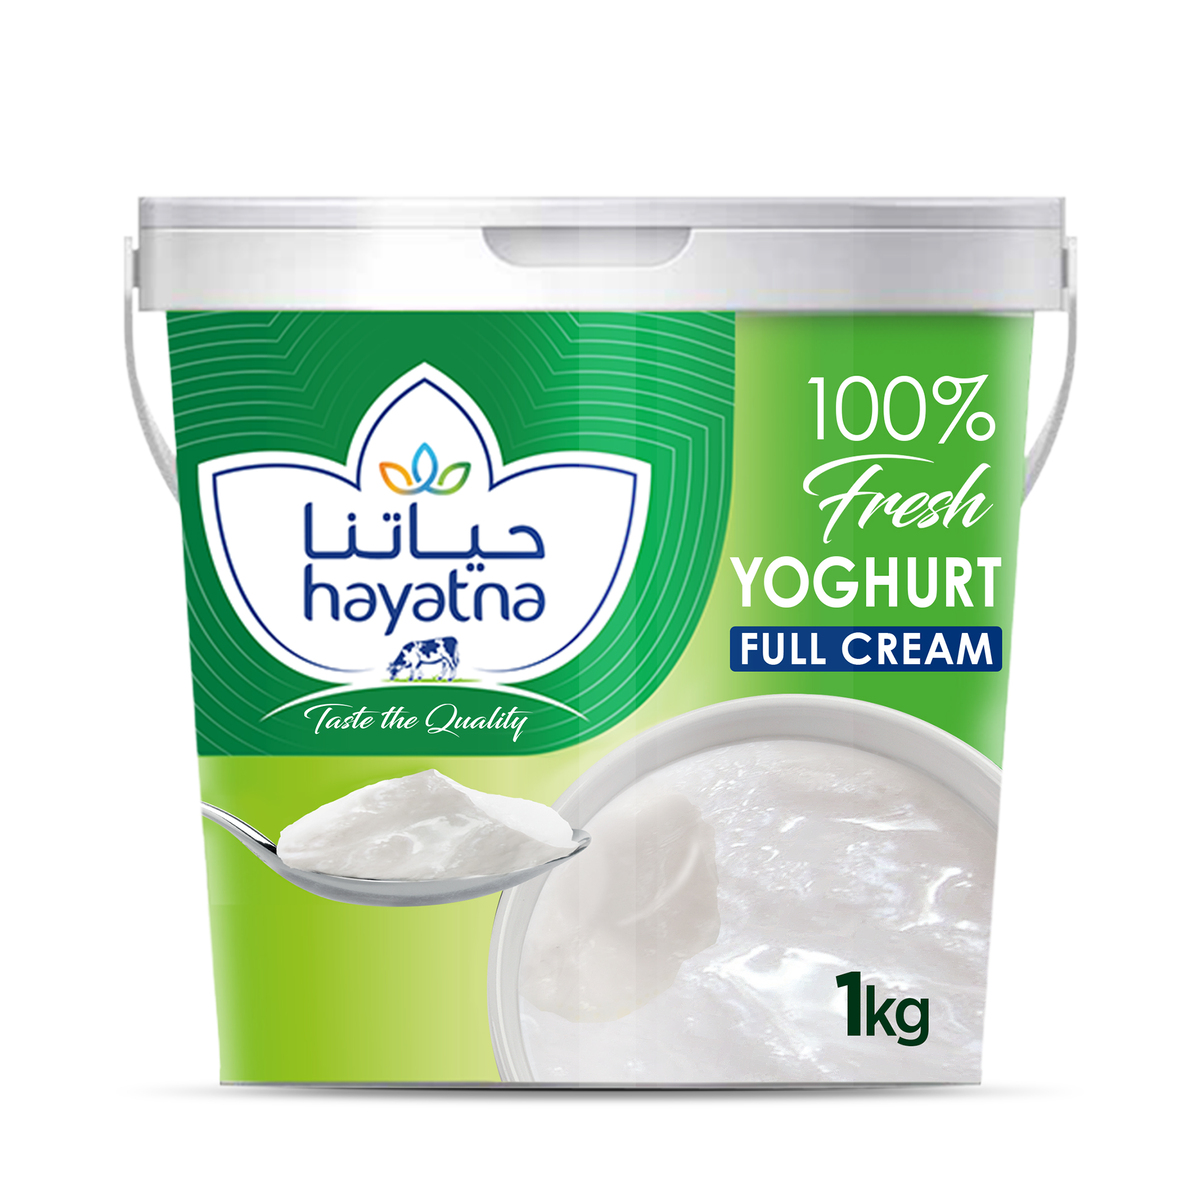 اشتري قم بشراء حياتنا زبادي كامل الدسم 1 كجم Online at Best Price من الموقع - من لولو هايبر ماركت Plain Yoghurt في الامارات